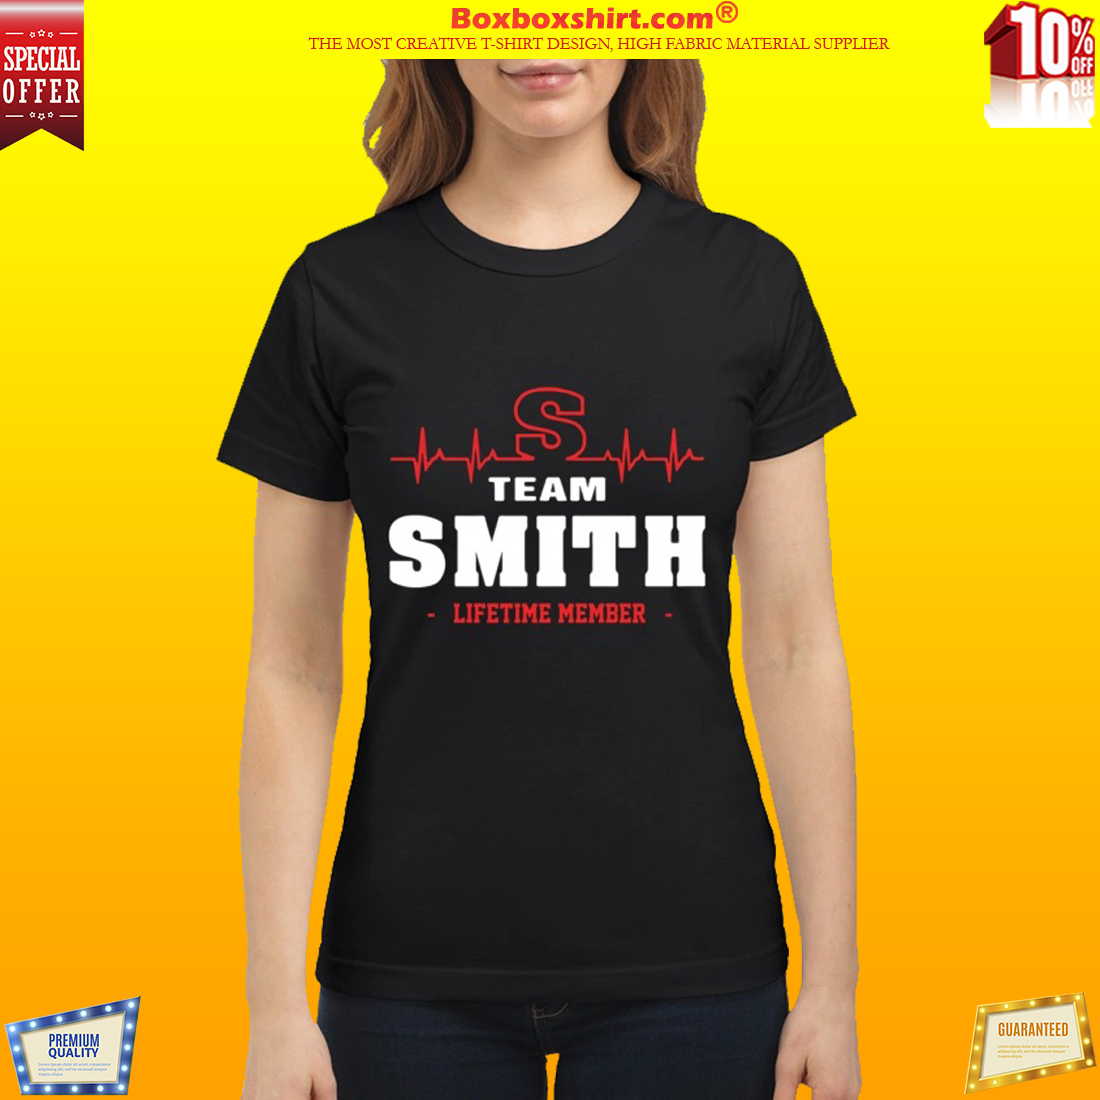 Team Smith lifetime member classic shirt